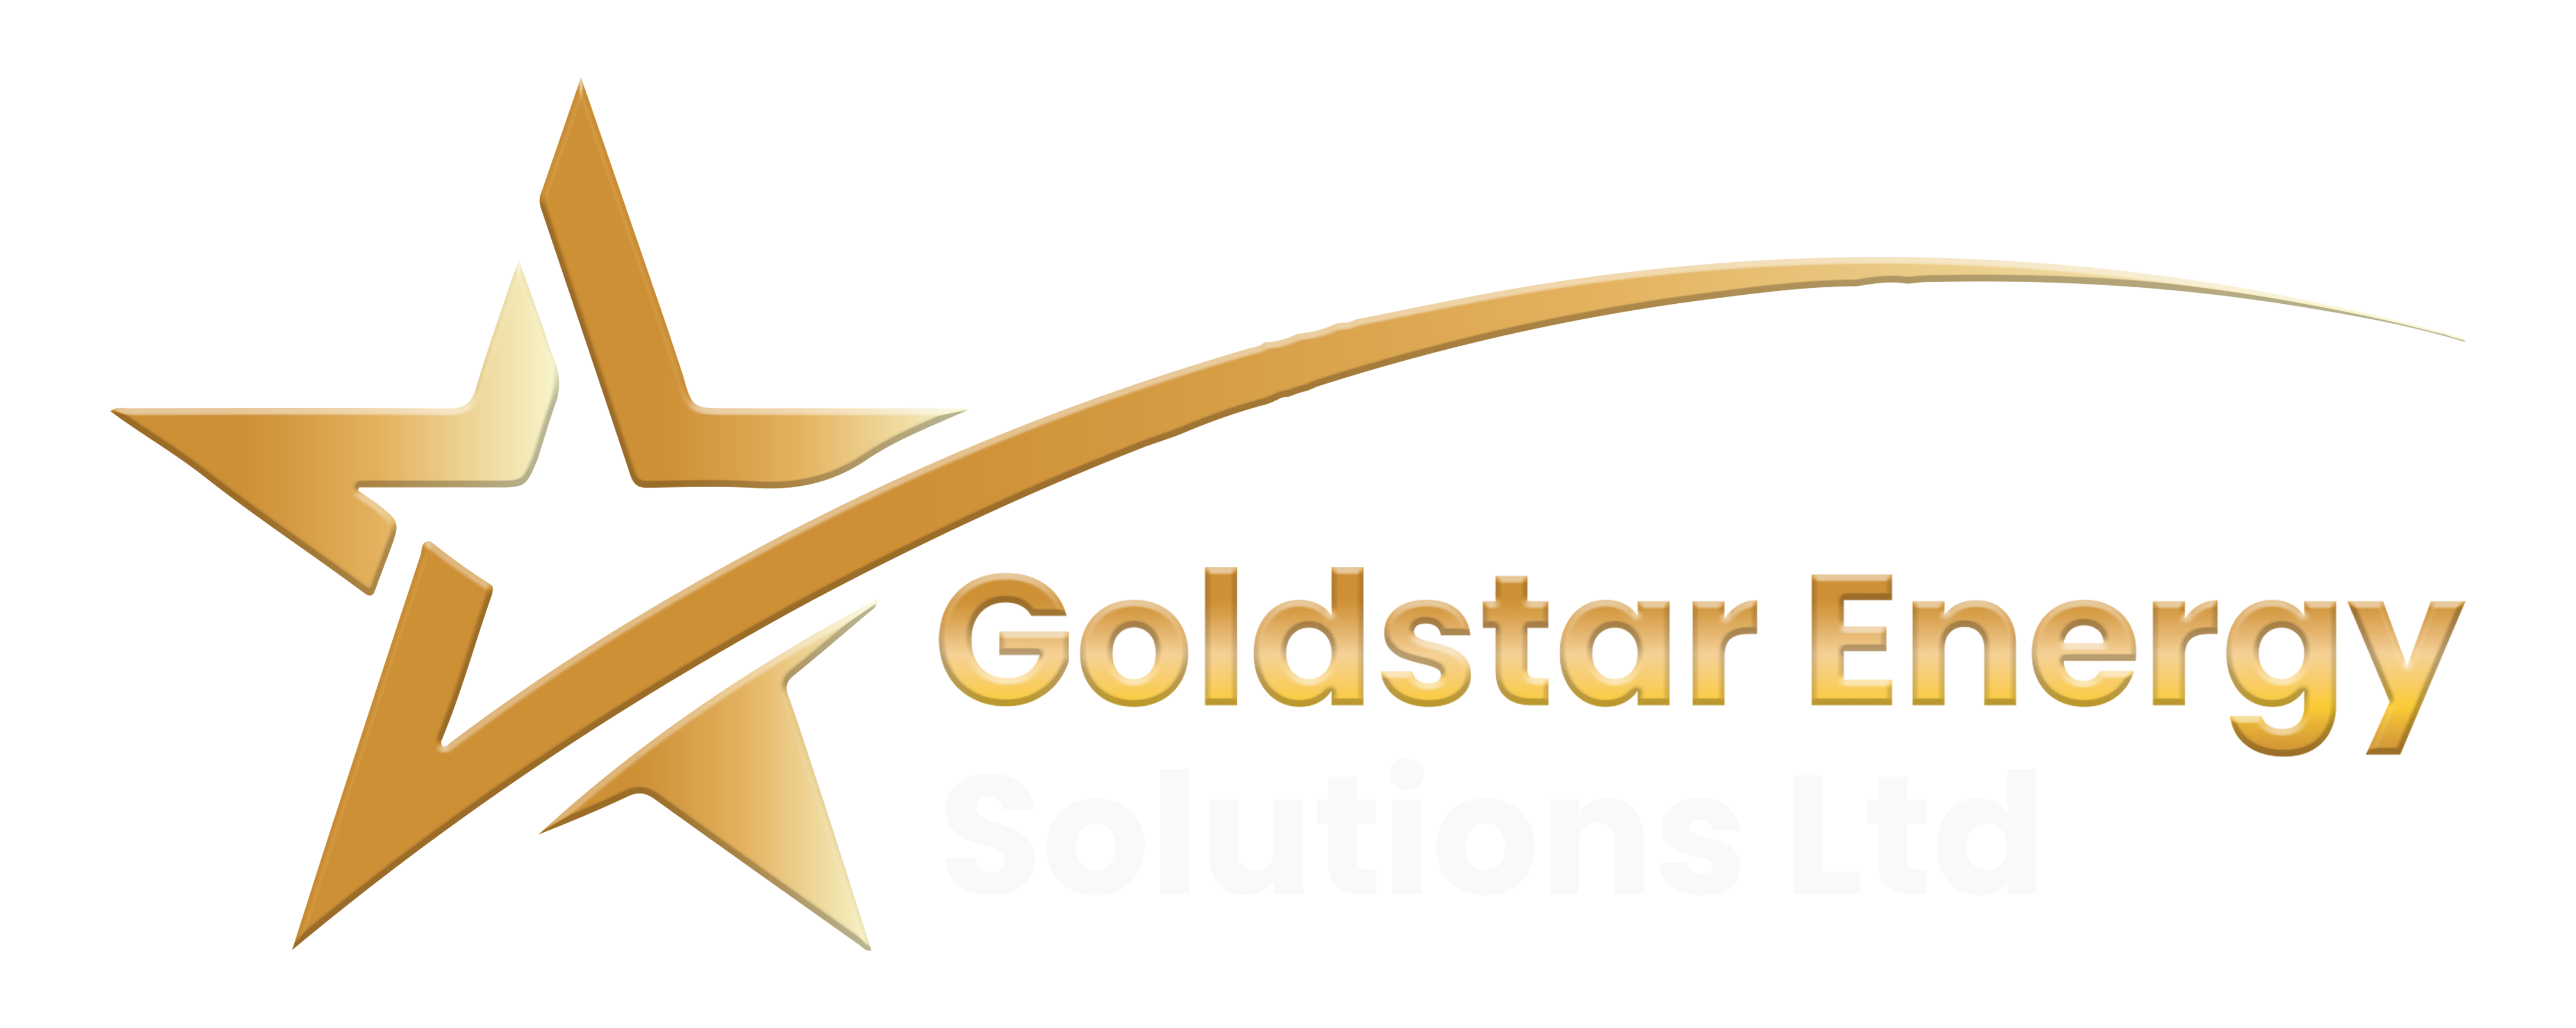 Goldstar Energy Solutions Ltd